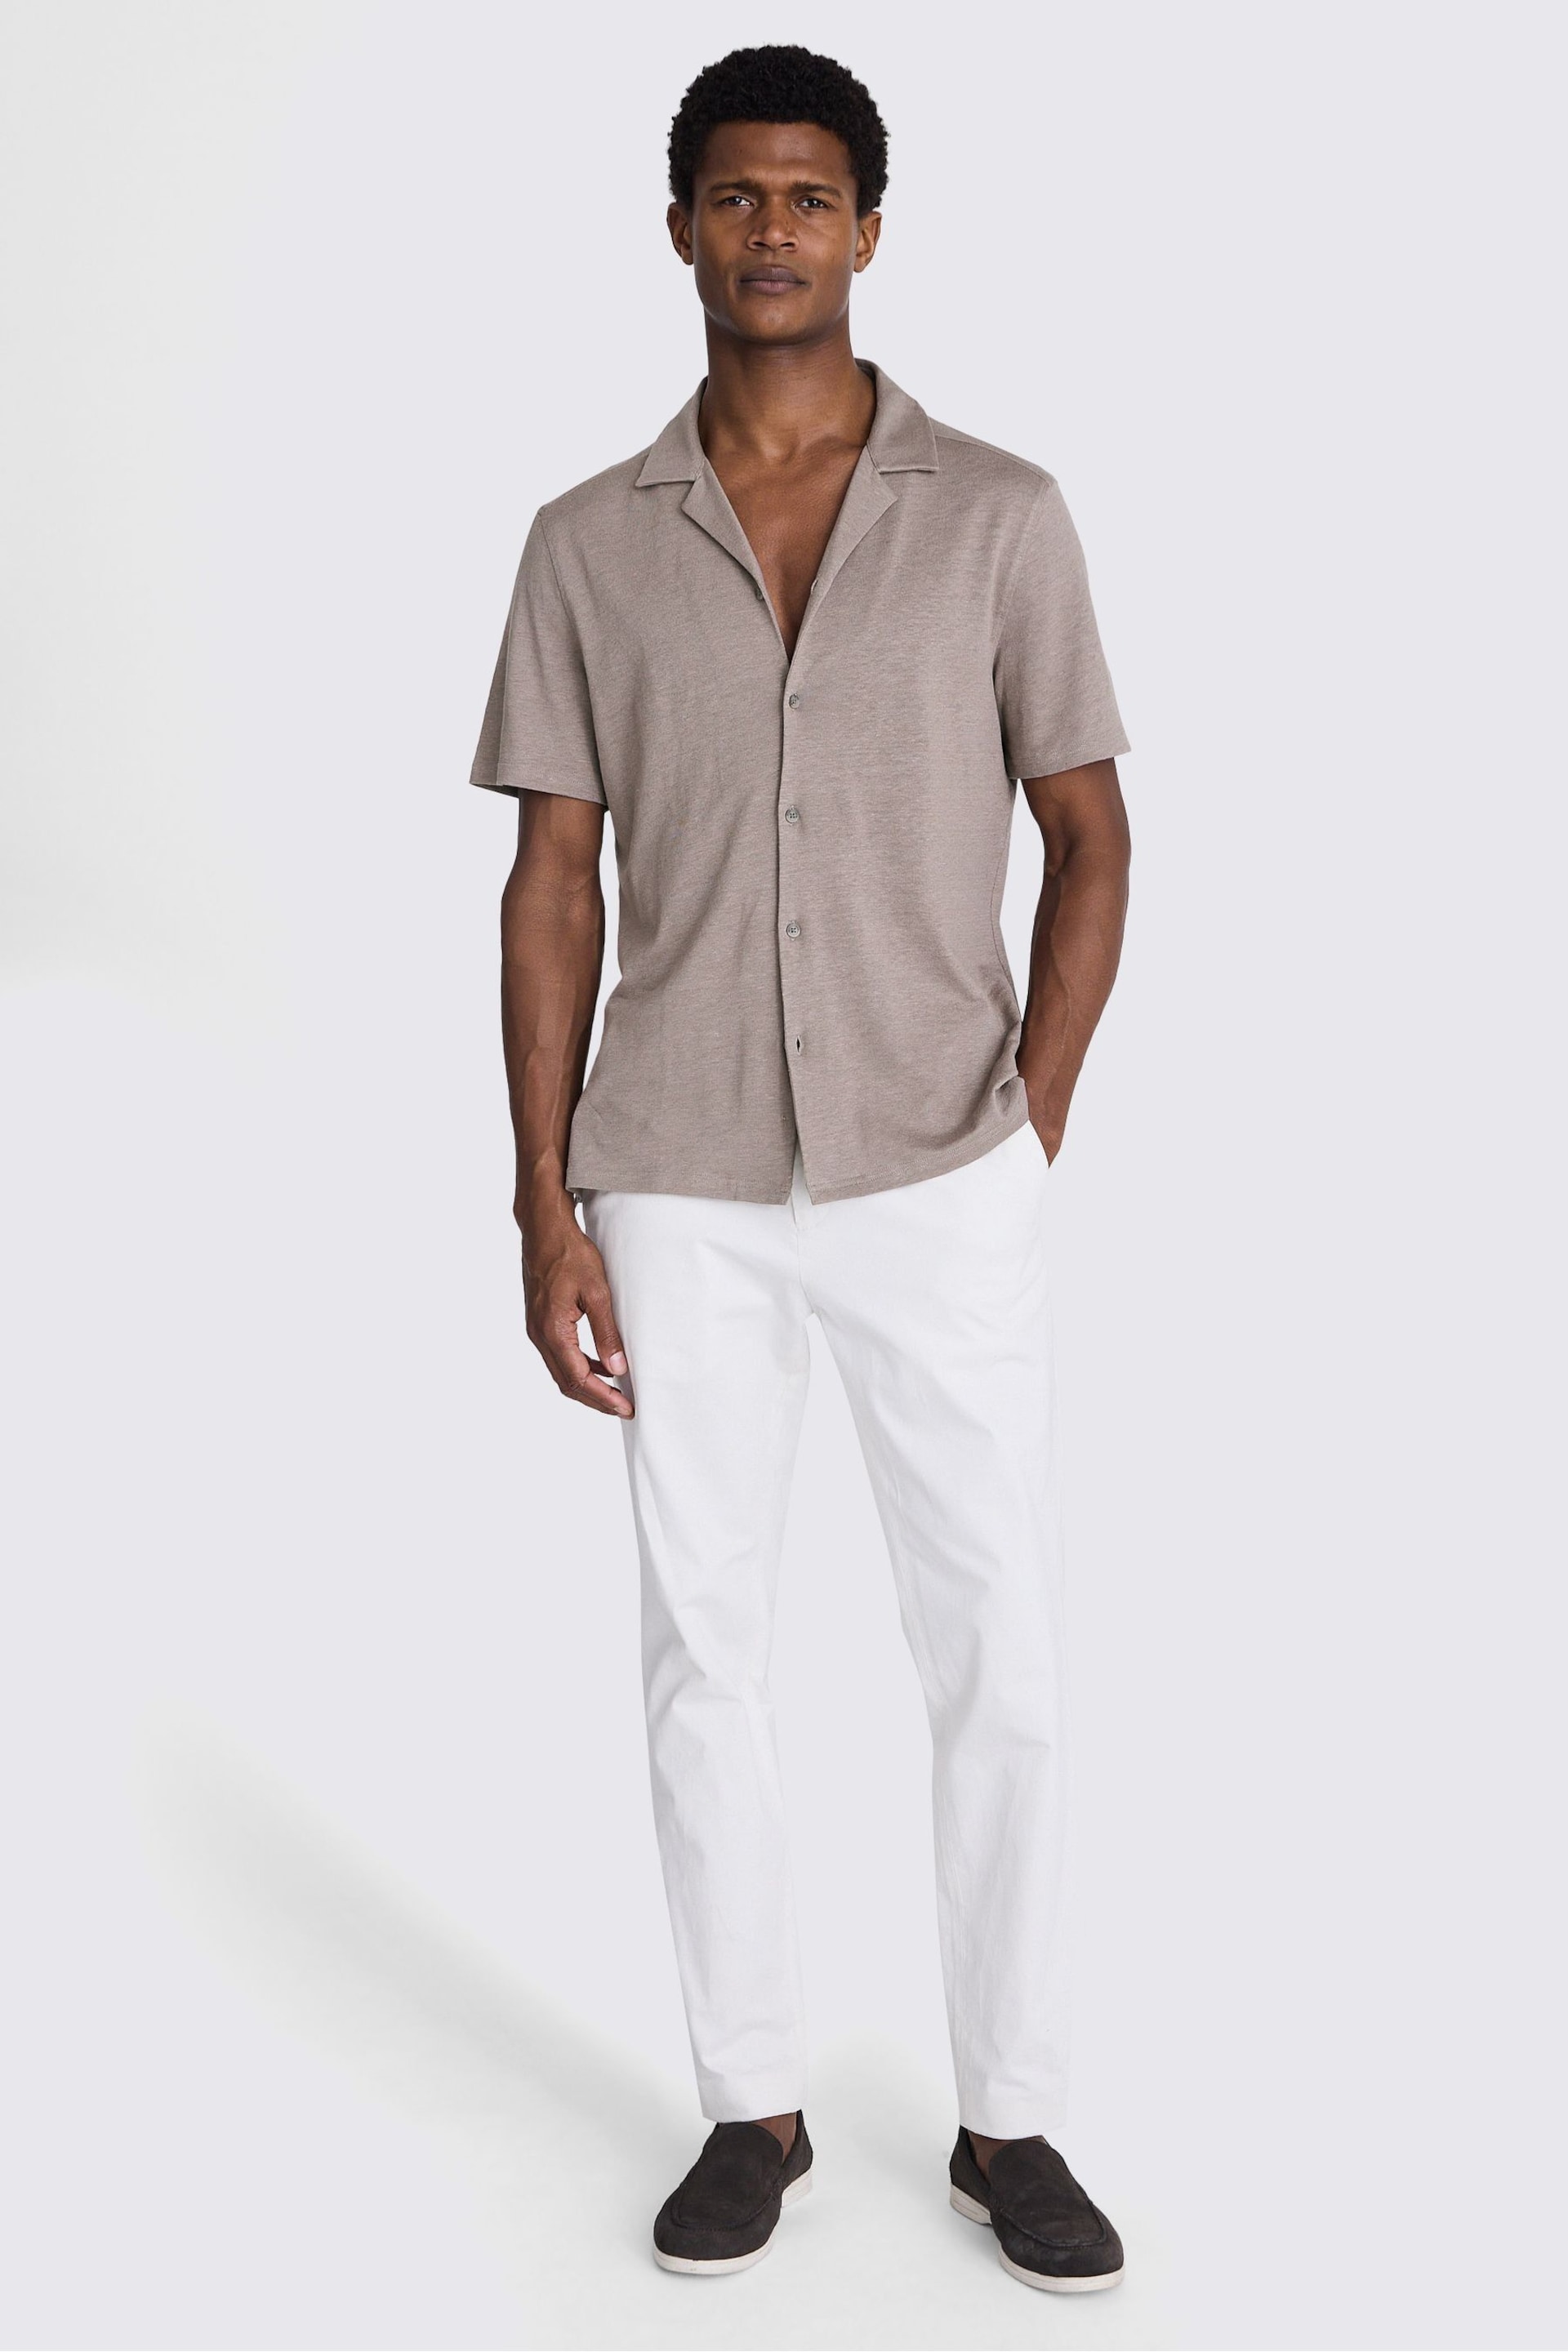 MOSS Dark Taupe Linen Blend Knitted Cuban Collar Shirt - Image 1 of 3